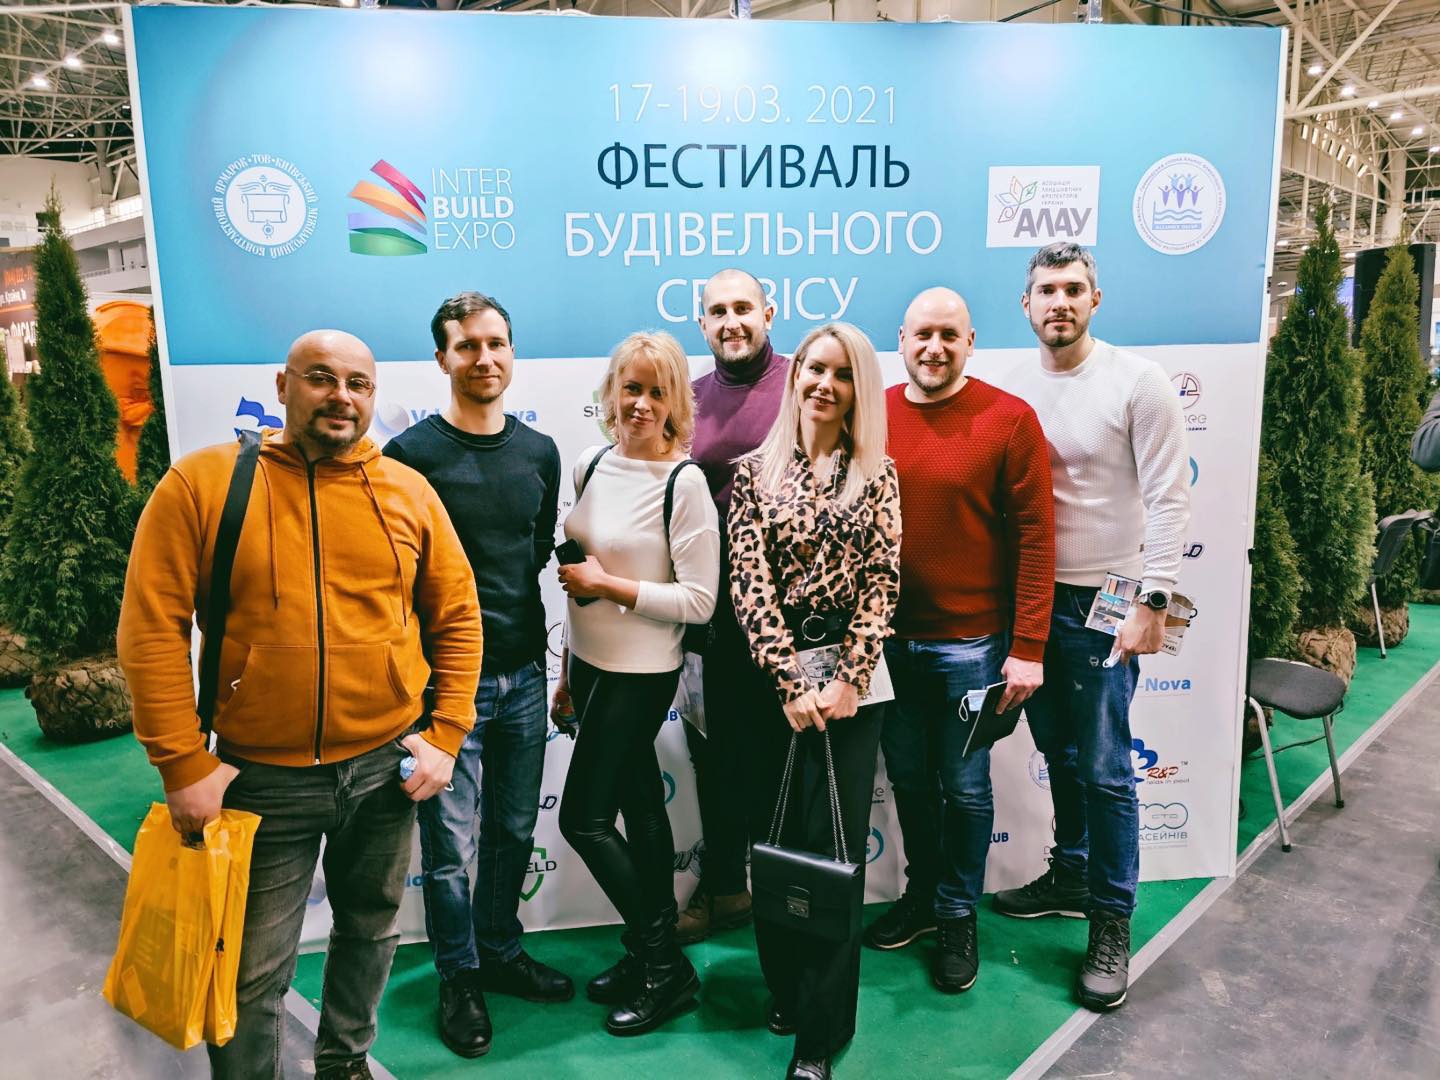 ​Inter Build Expo (м.Київ, 17-19.03.2021)